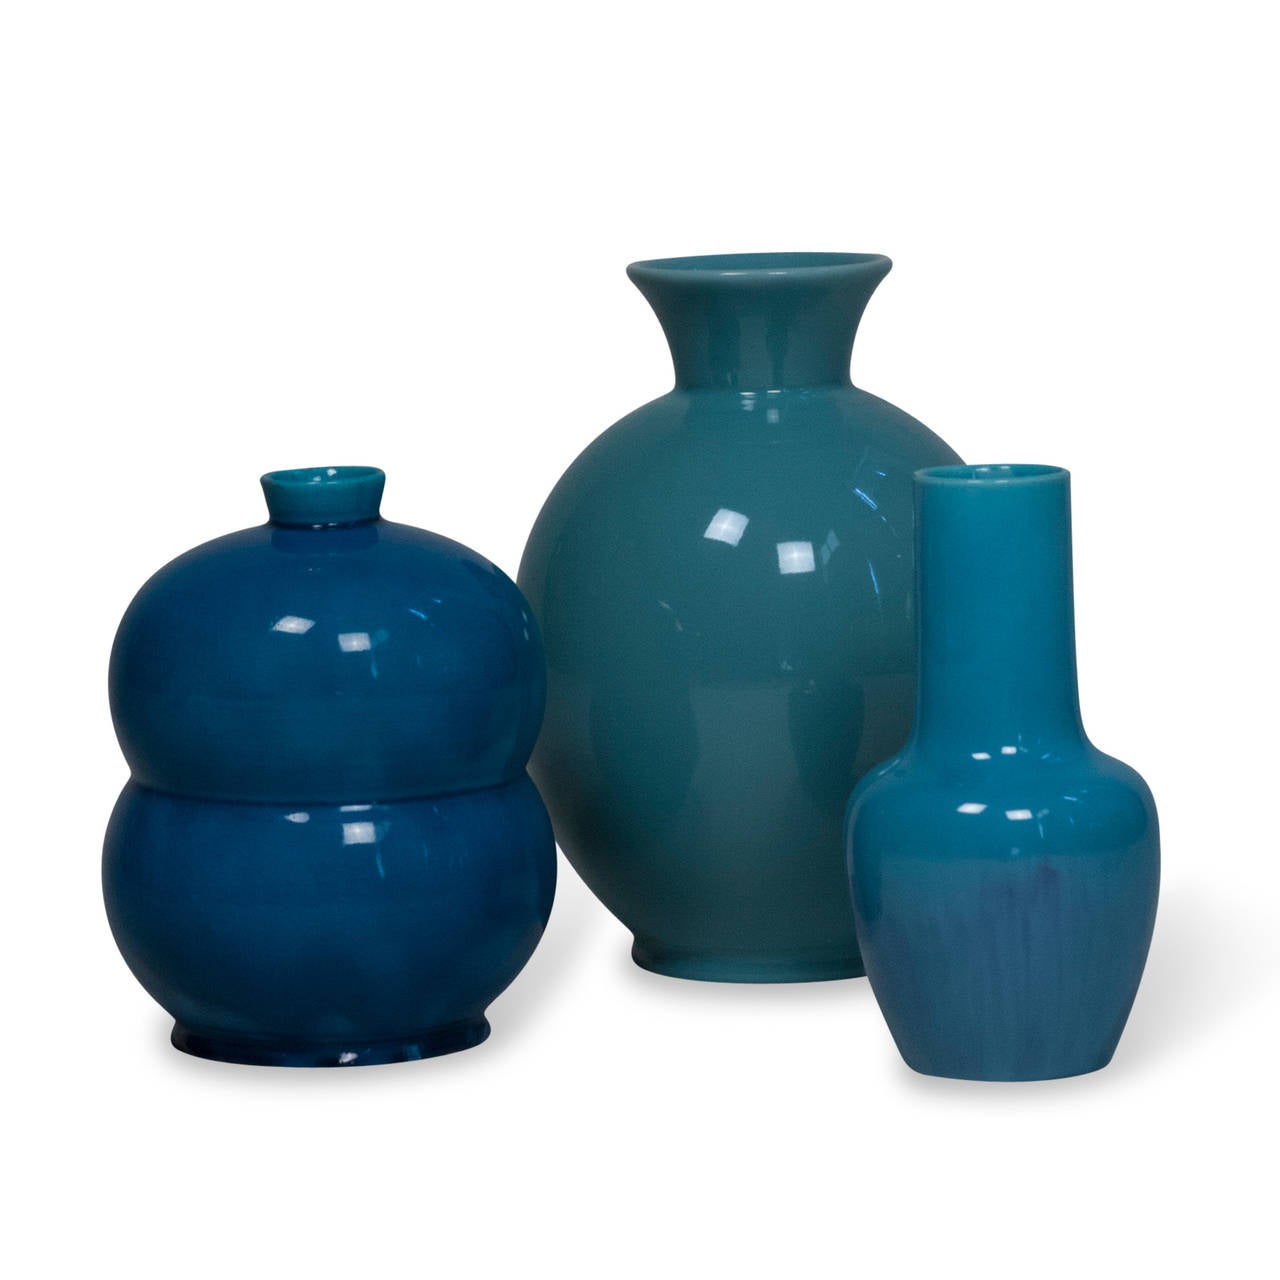 Mid-20th Century Three Blue Ceramic Vases